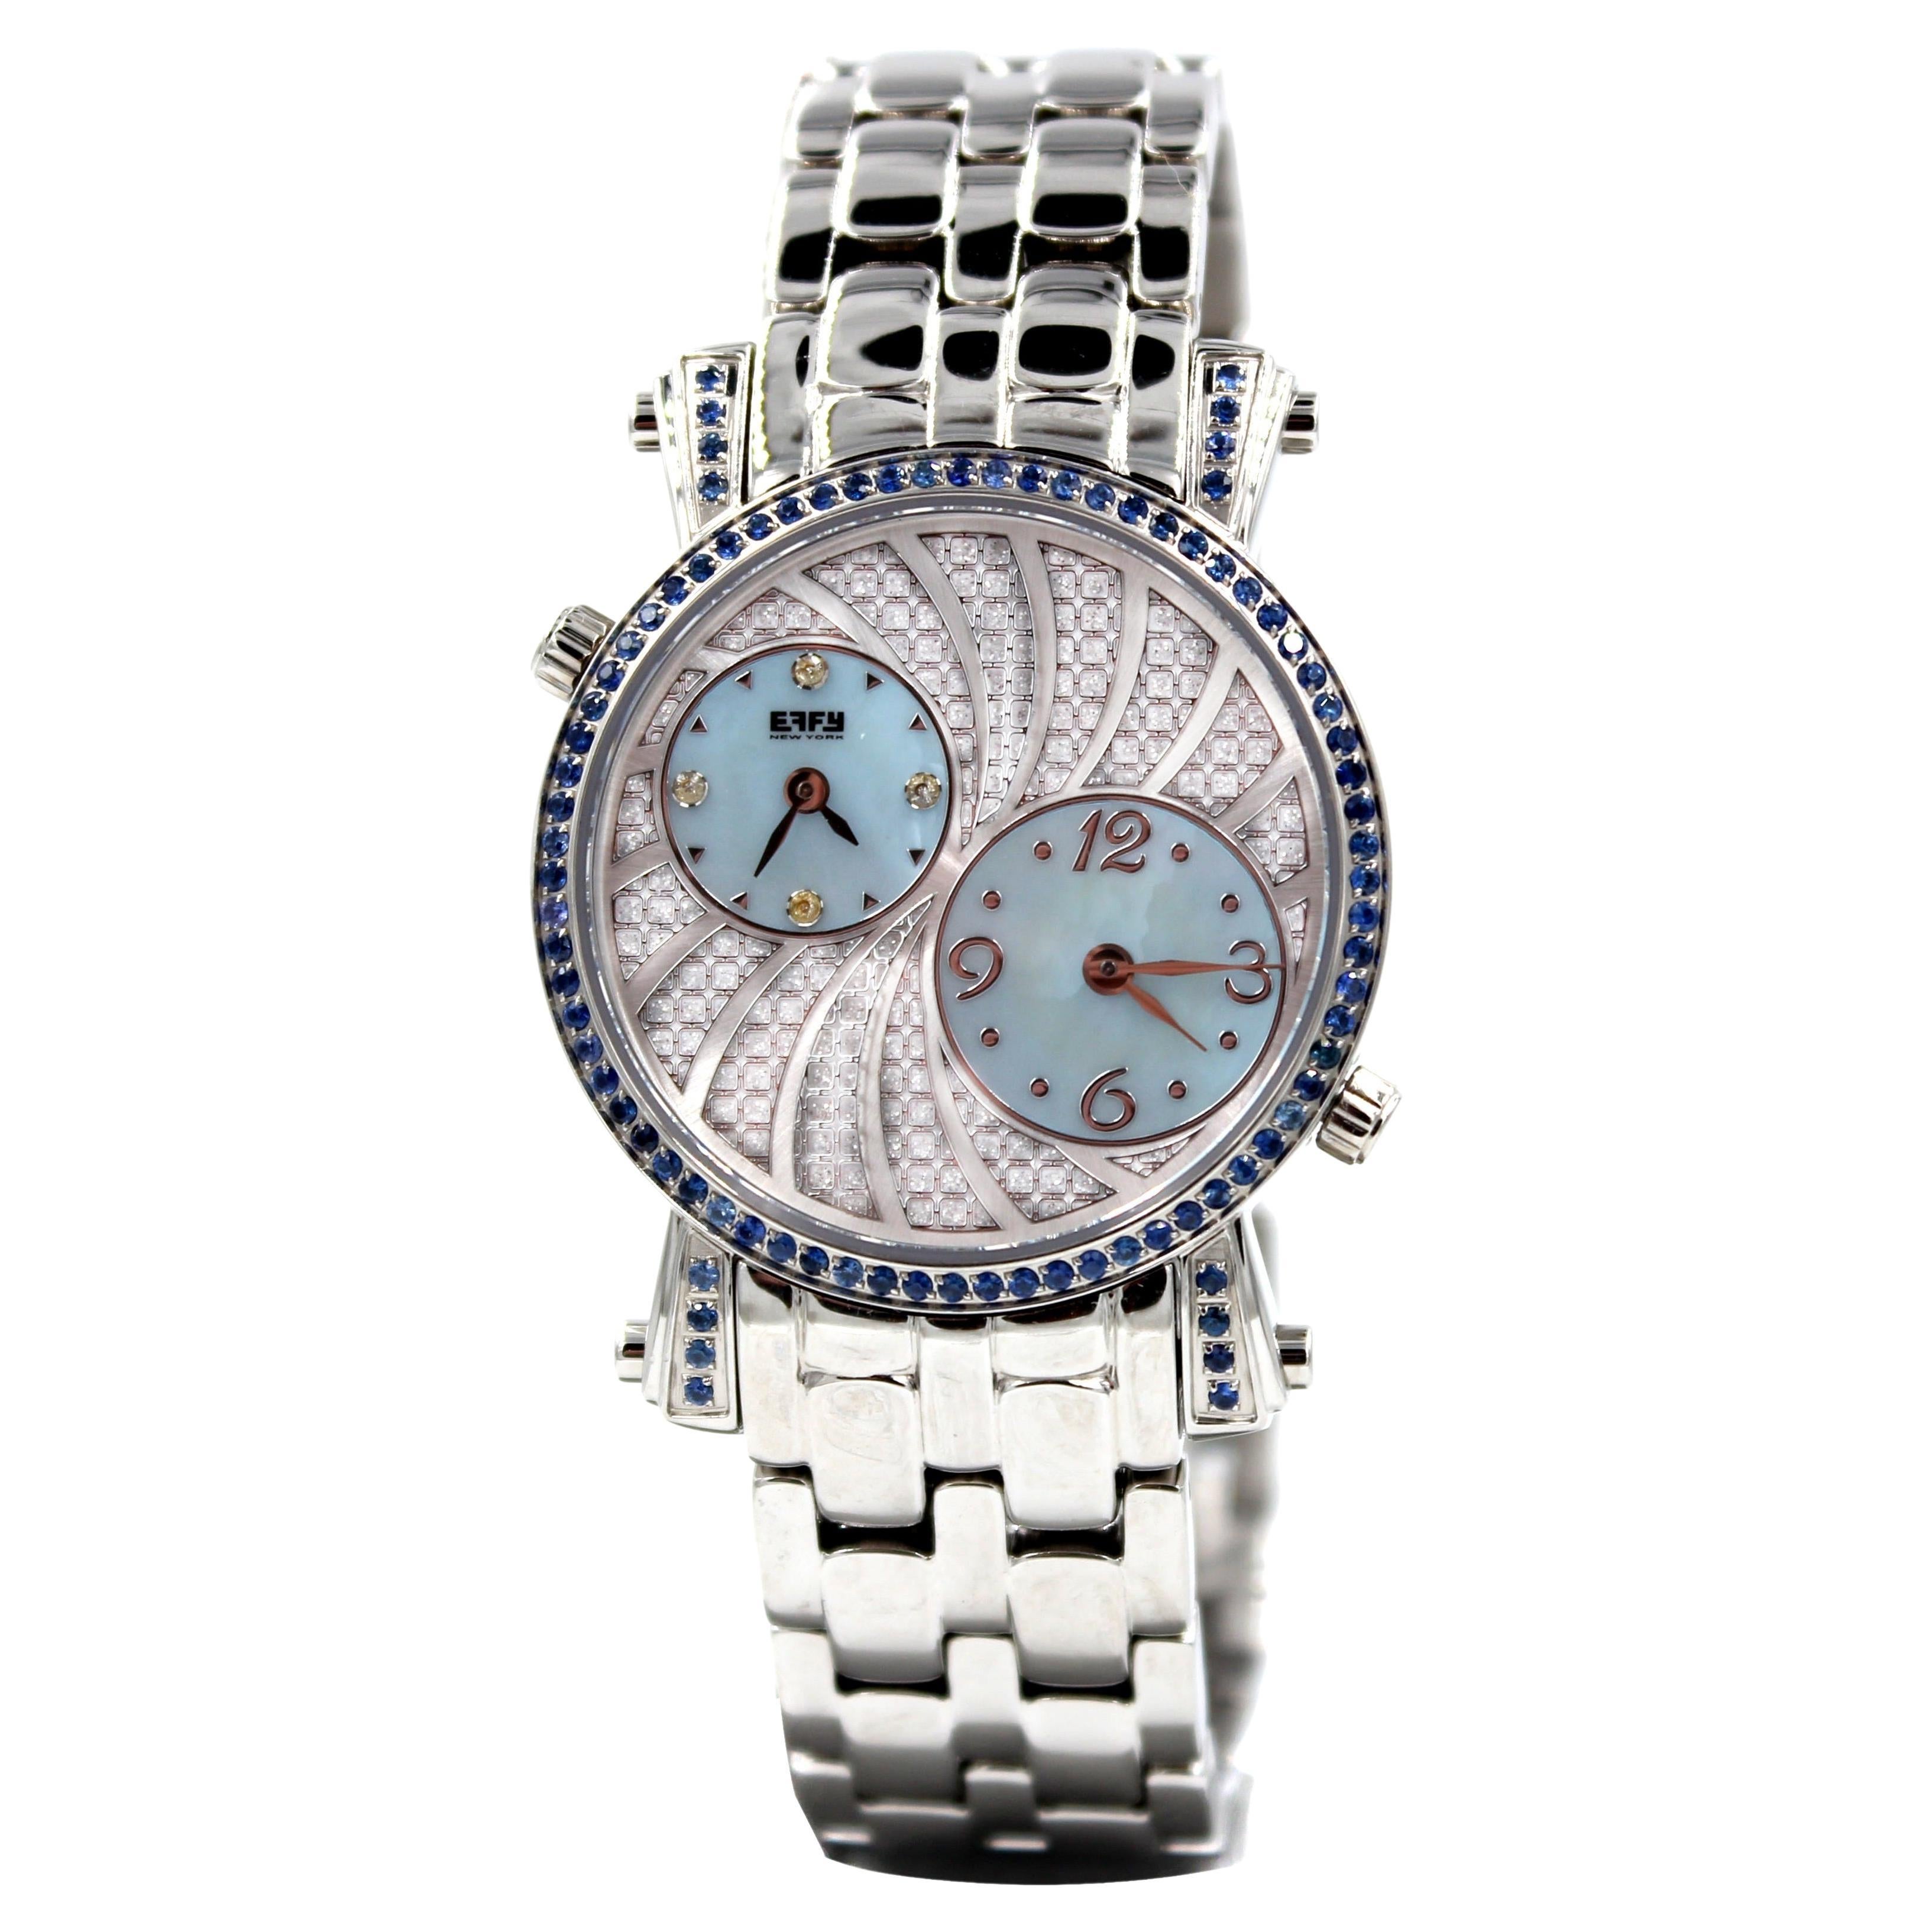 Blauer Saphir & Diamanten Pave Zifferblatt Luxus Schweizer Quarz Exotische Lederband Uhr